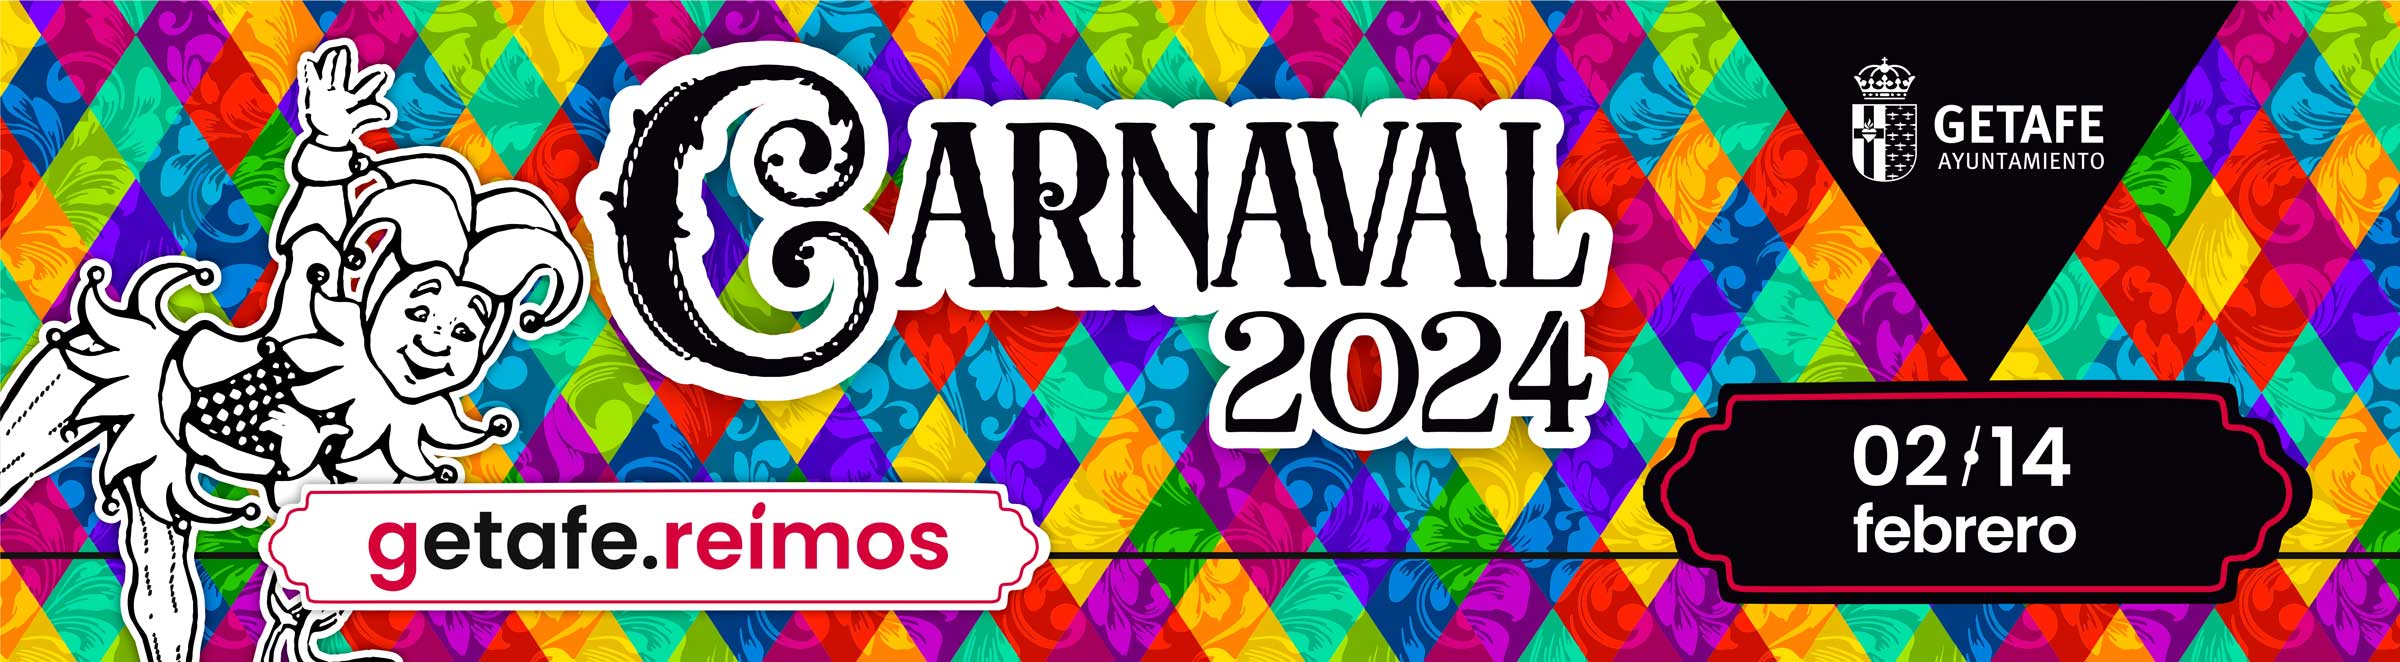 Portada Carnaval de Getafe 2023